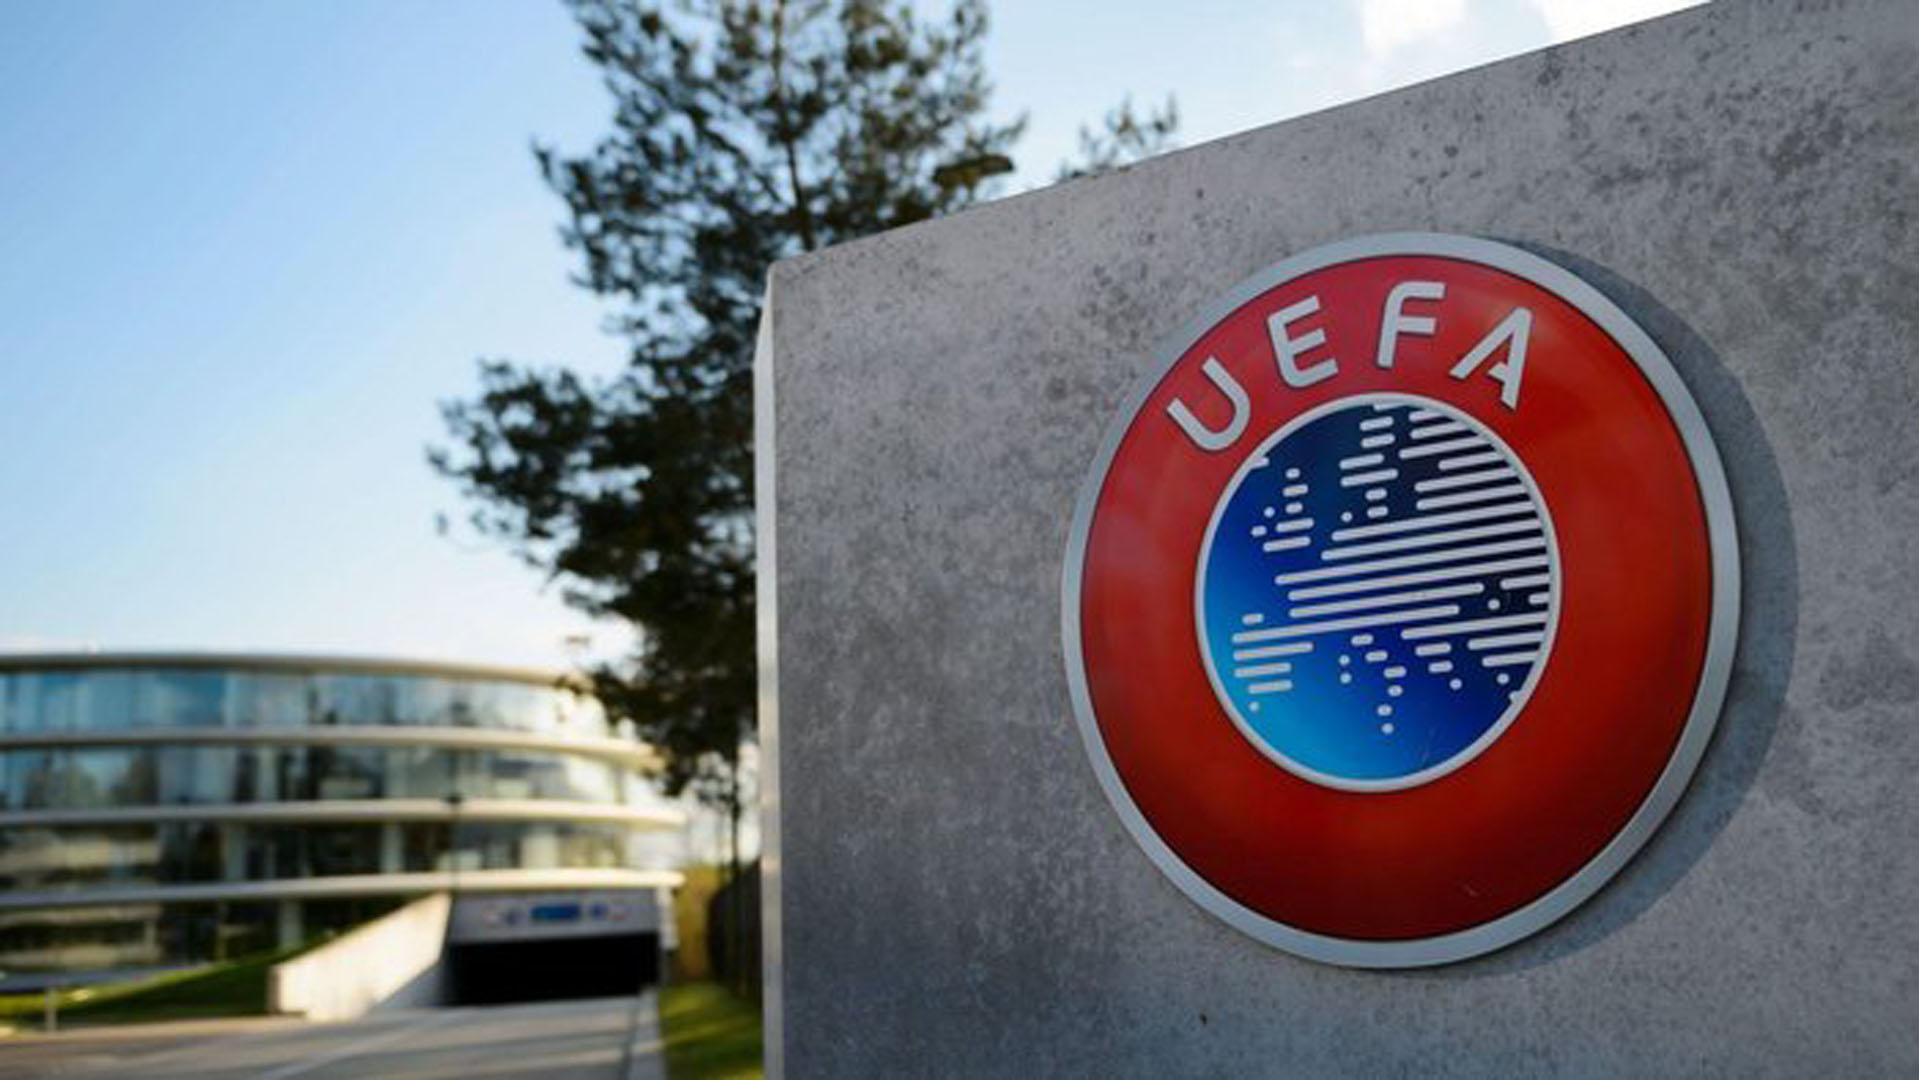 Son dakika! TFF, EURO 2028 için UEFA'ya resmen başvurdu!